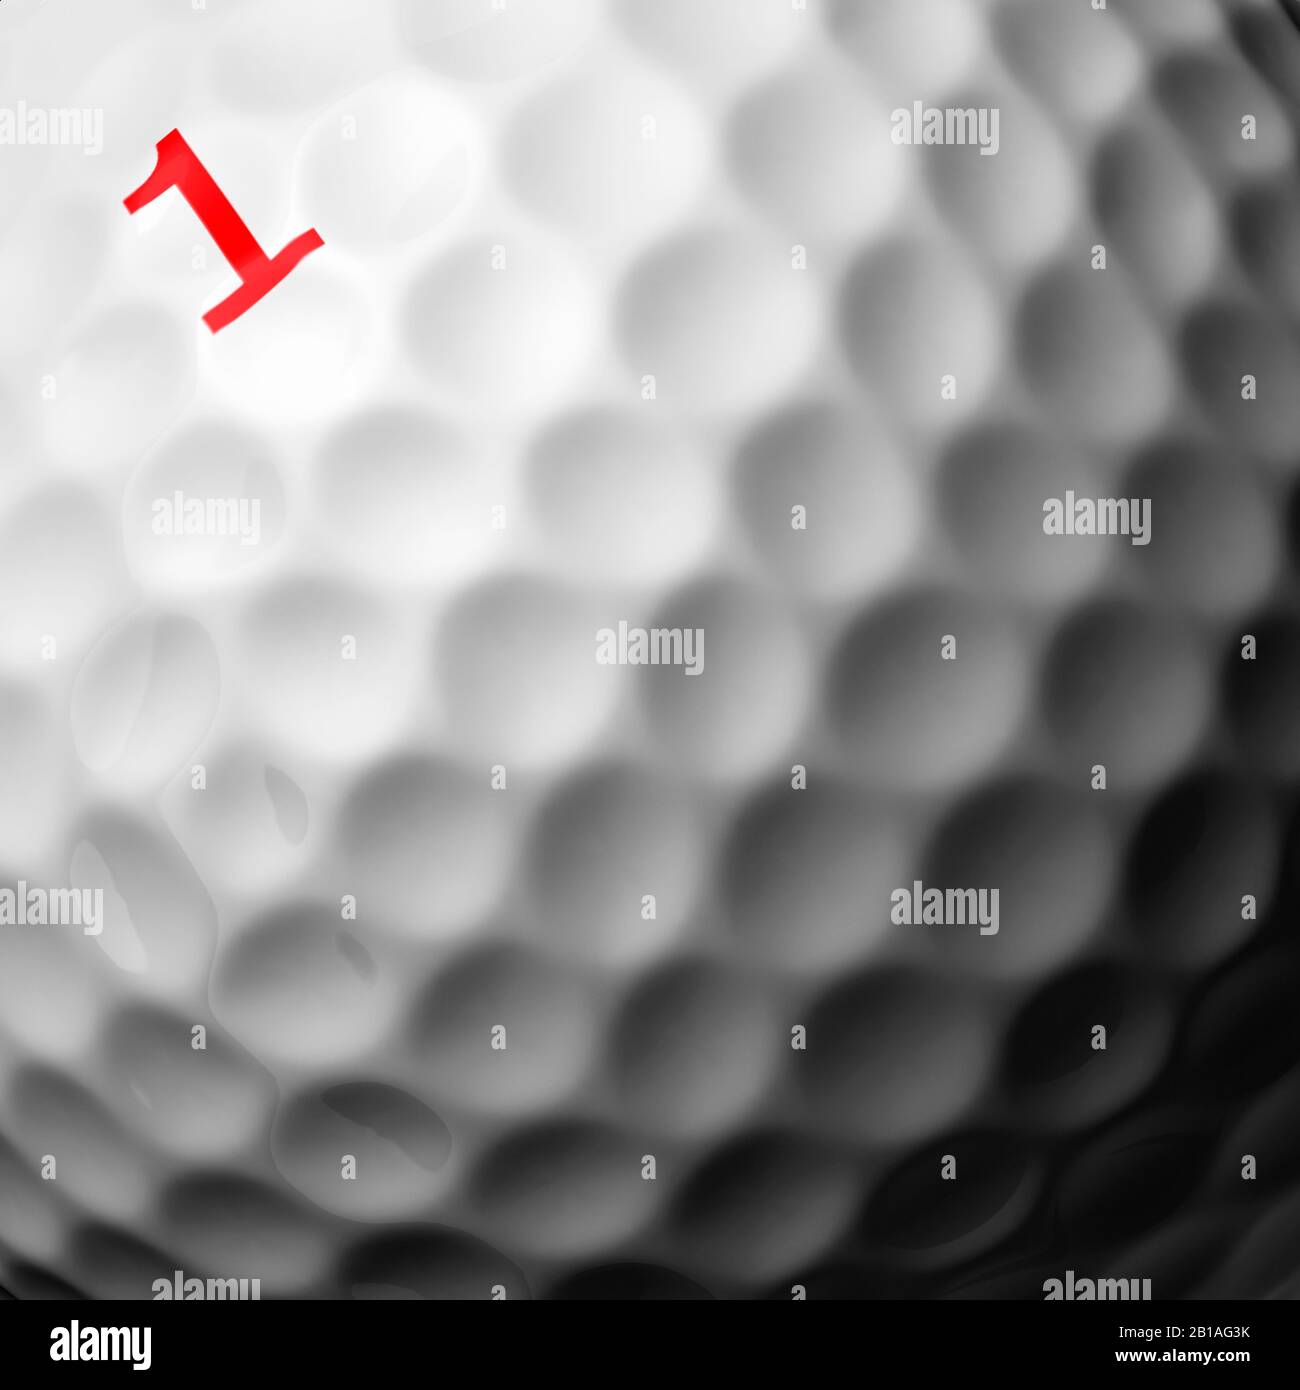 Balle de golf extrêmement près montrant le numéro 1. Texture blanche et brillante. Banque D'Images